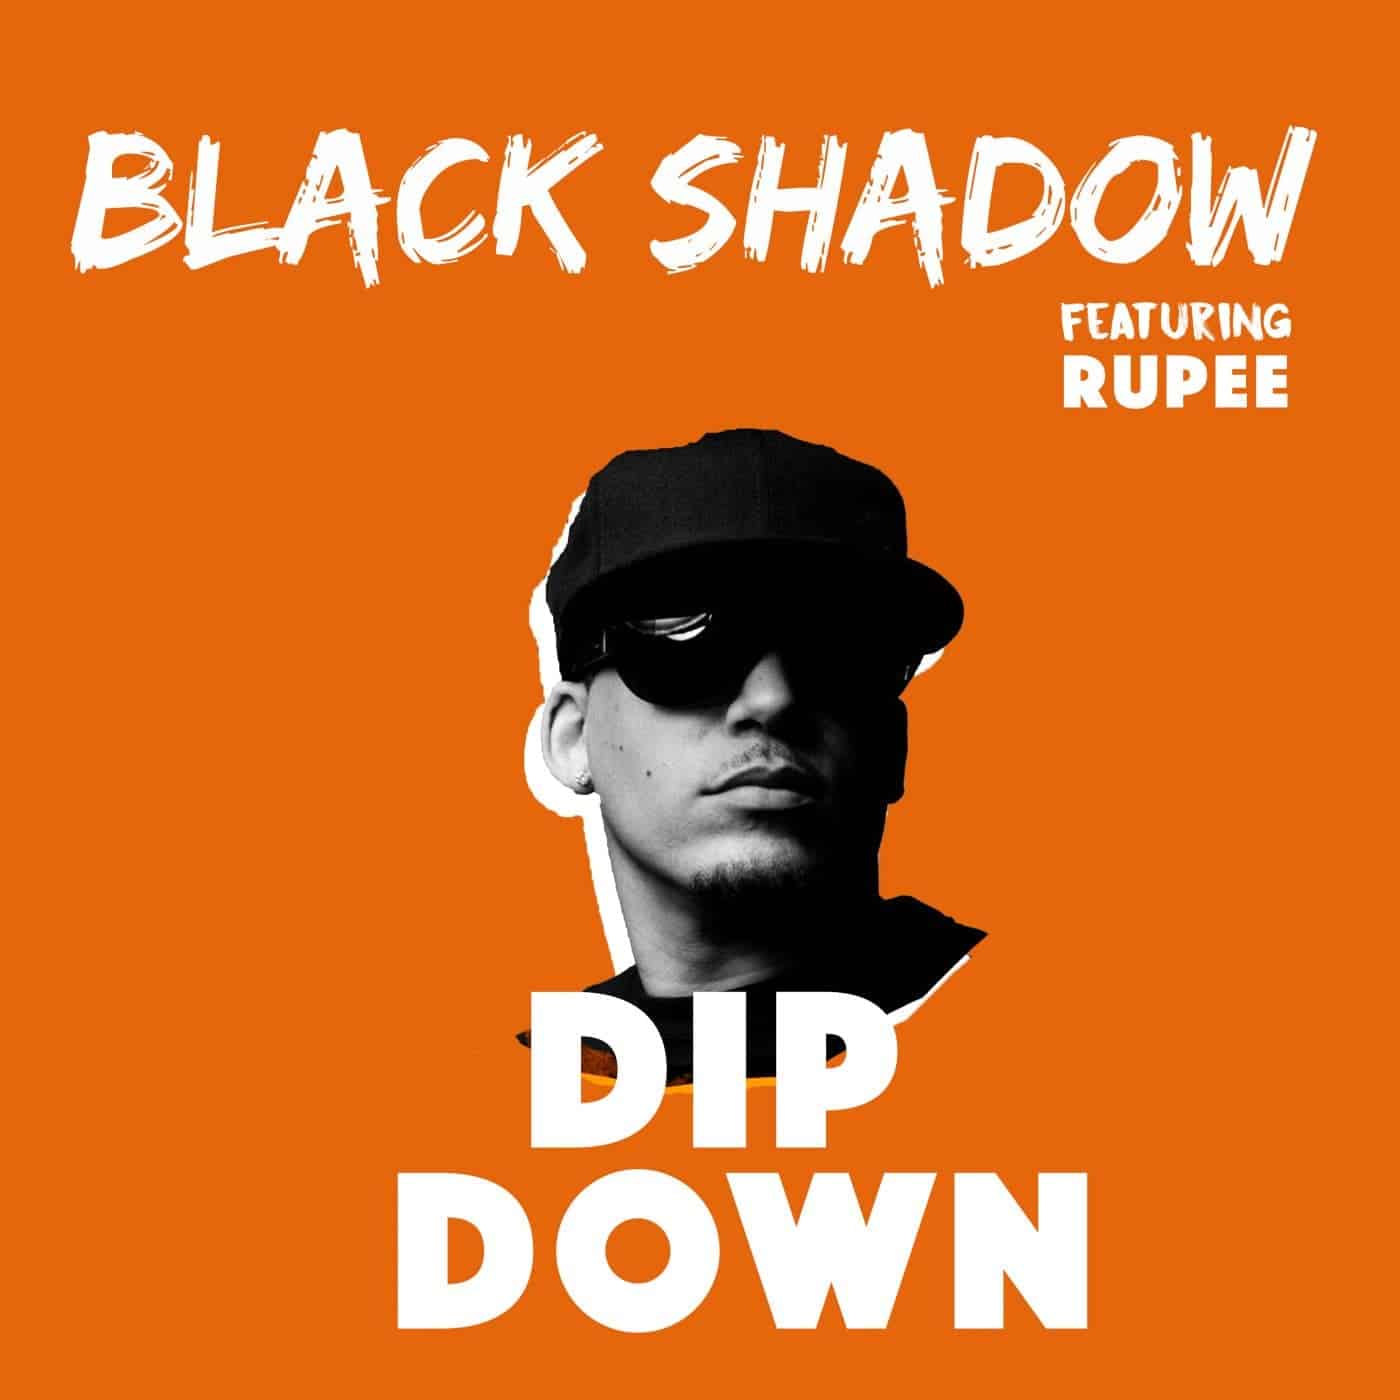 Black Shadow feat. Rupee - Dip Down - mp3